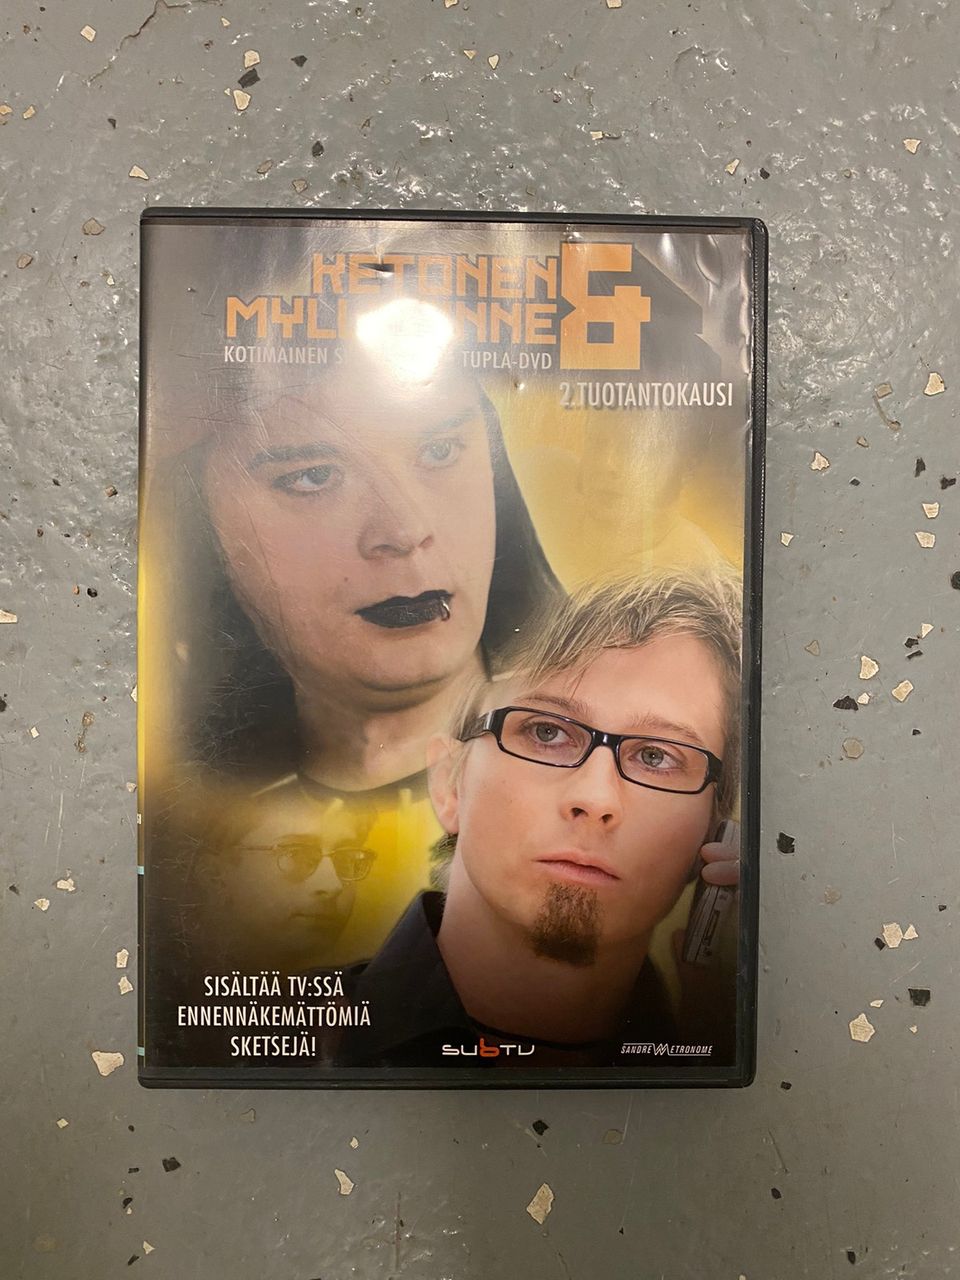 Ketonen ja Myllyrinne 2 tuotantokausi dvd